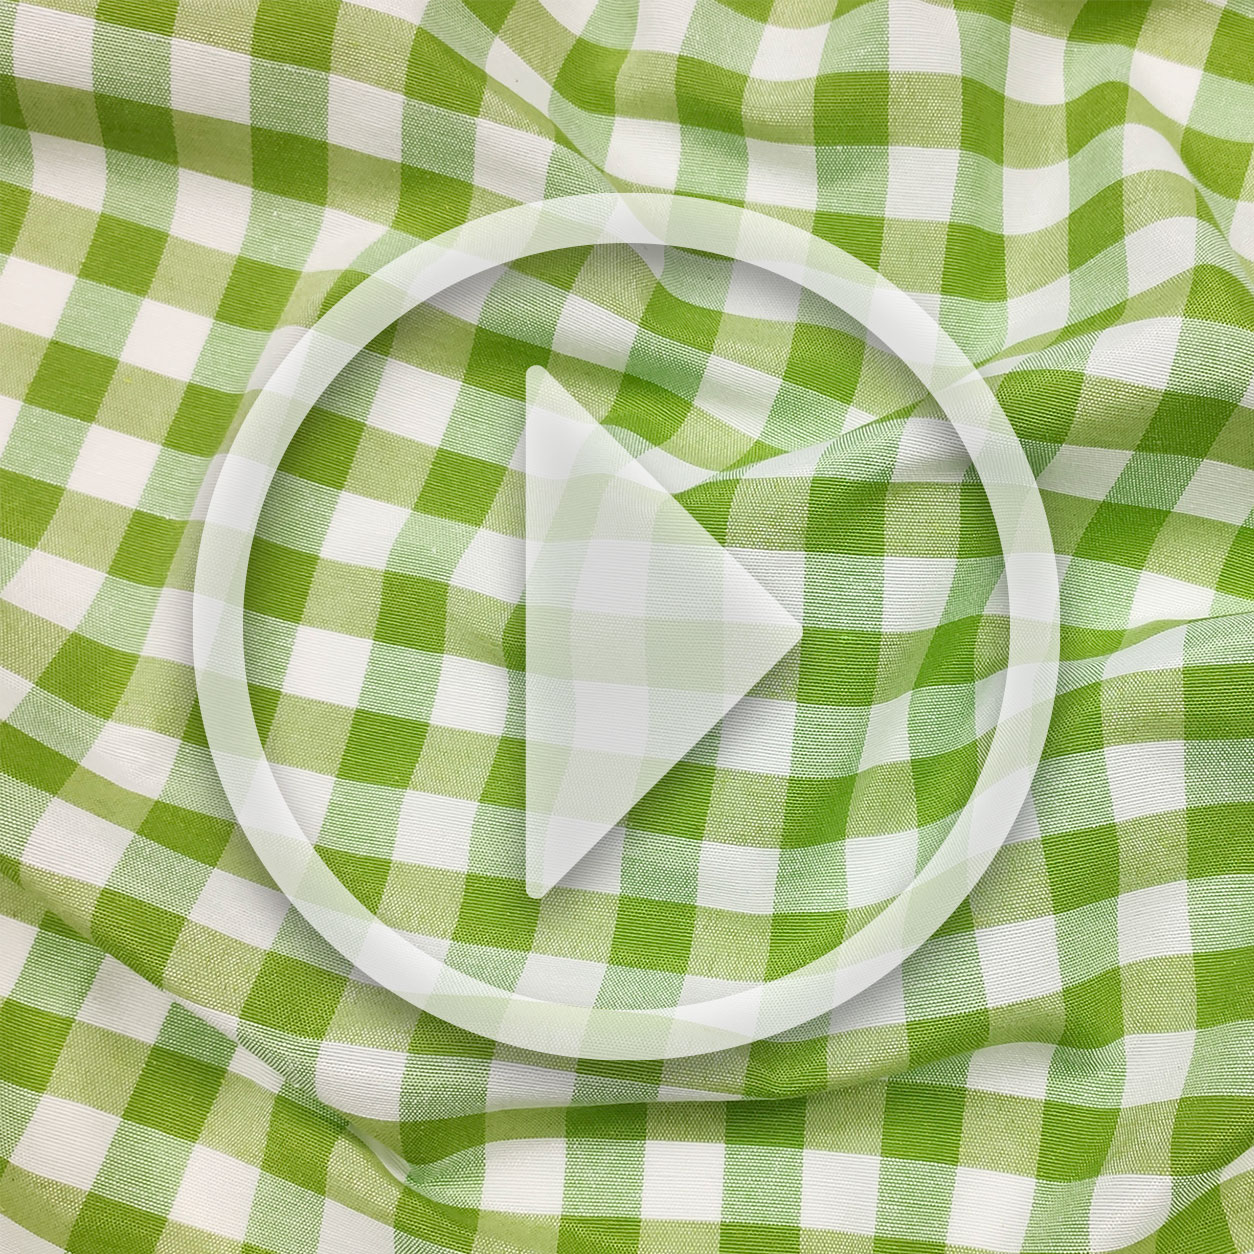 Maschera video per sito tovaglia confezionata quadretti verdi (1)